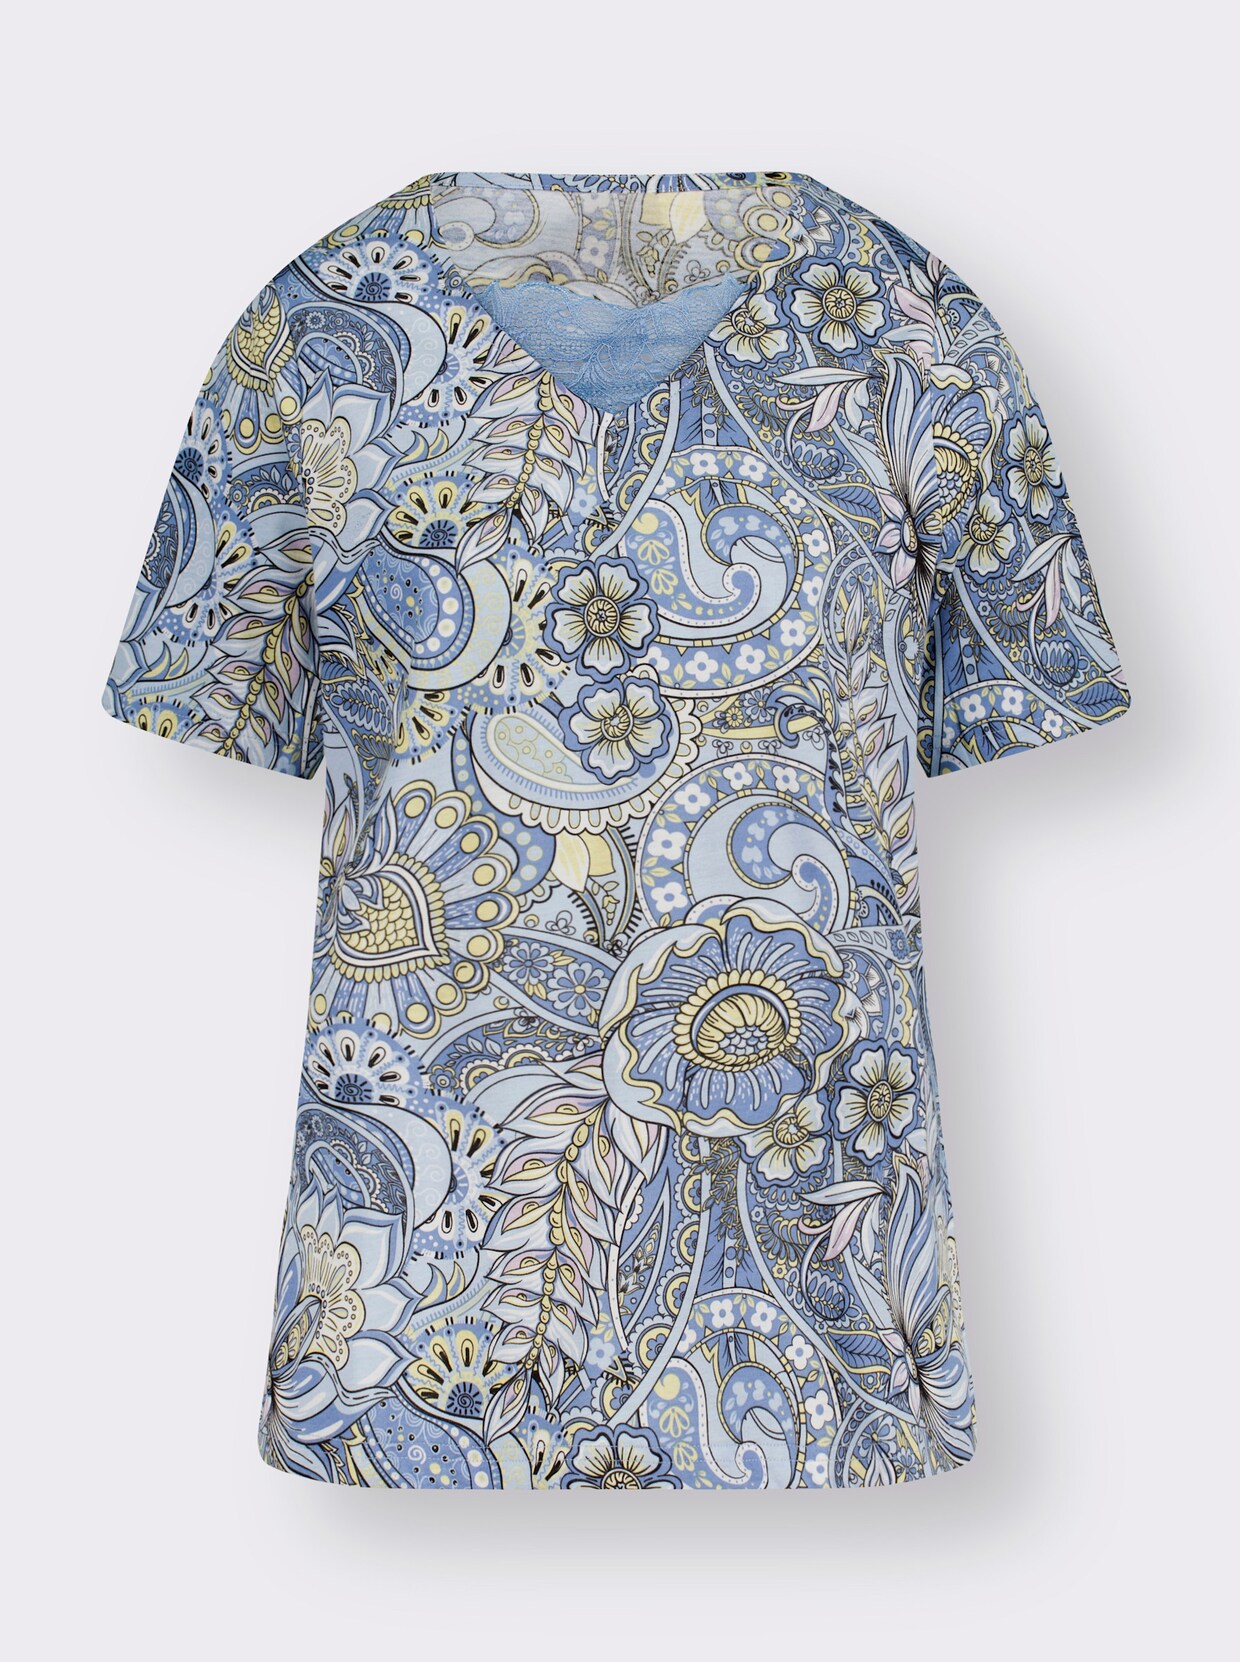 Tričko s krátkým rukávem - modrá-vzor